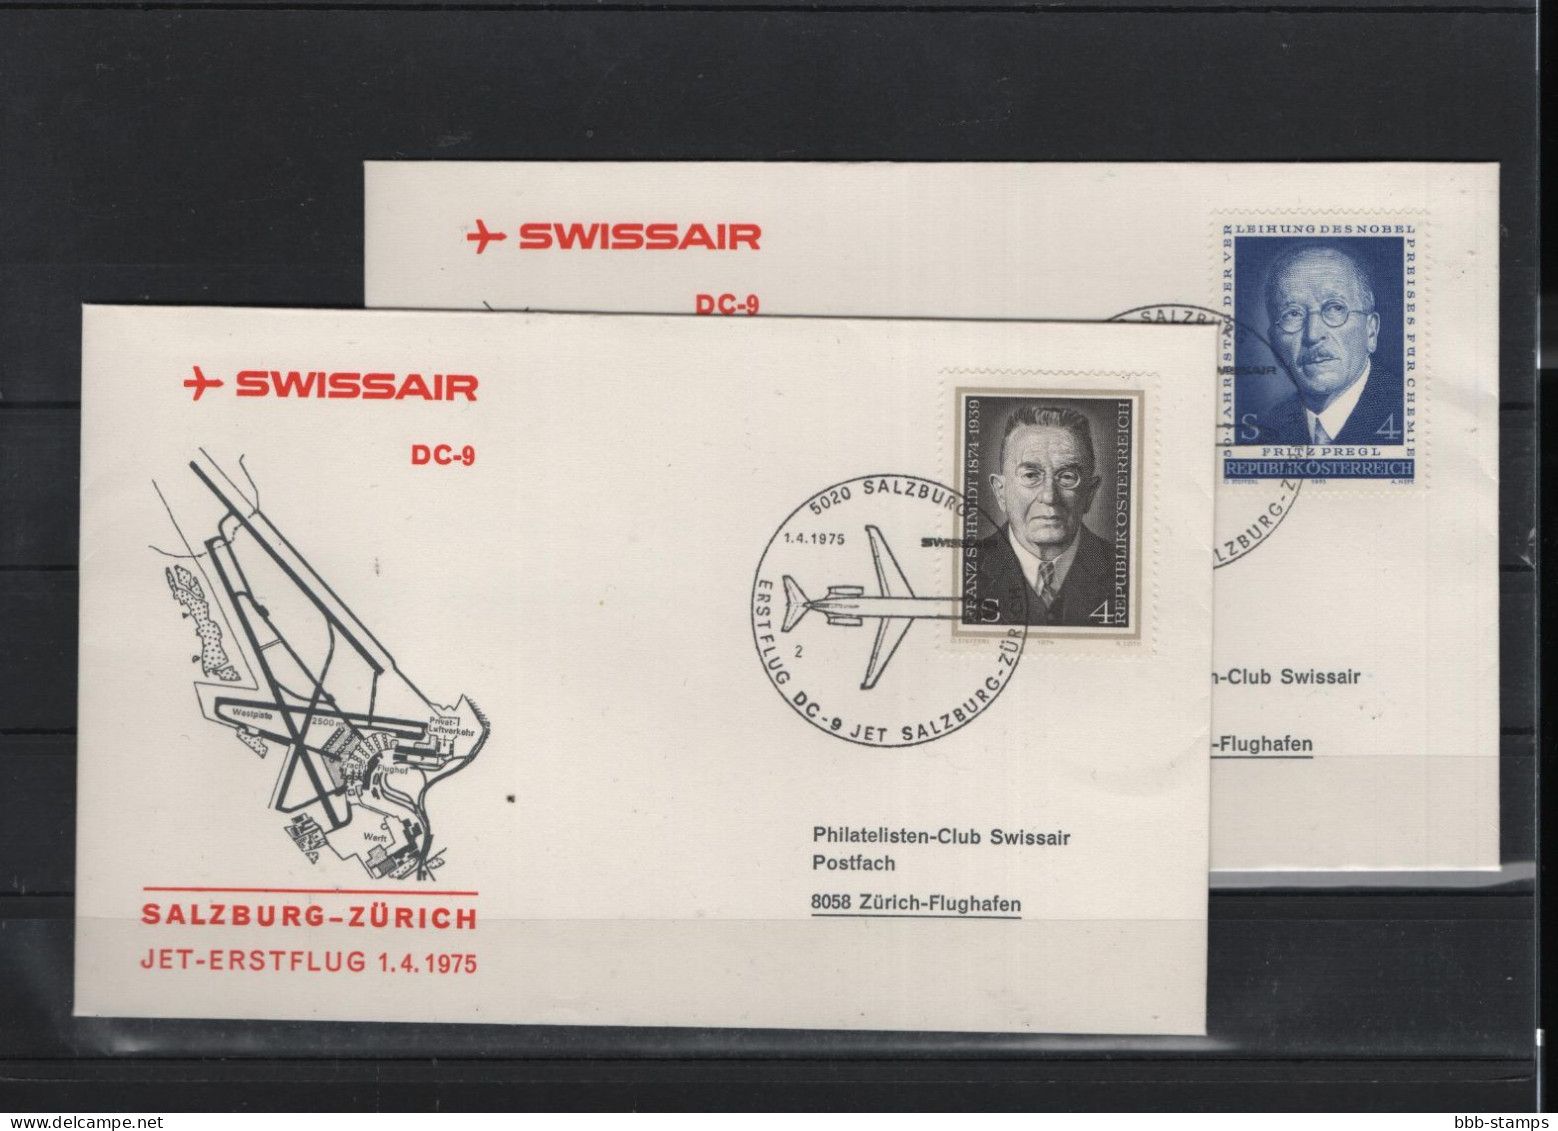 Schweiz Luftpost FFC Swissair  1.4.1975 Salzburg - Zürich - First Flight Covers